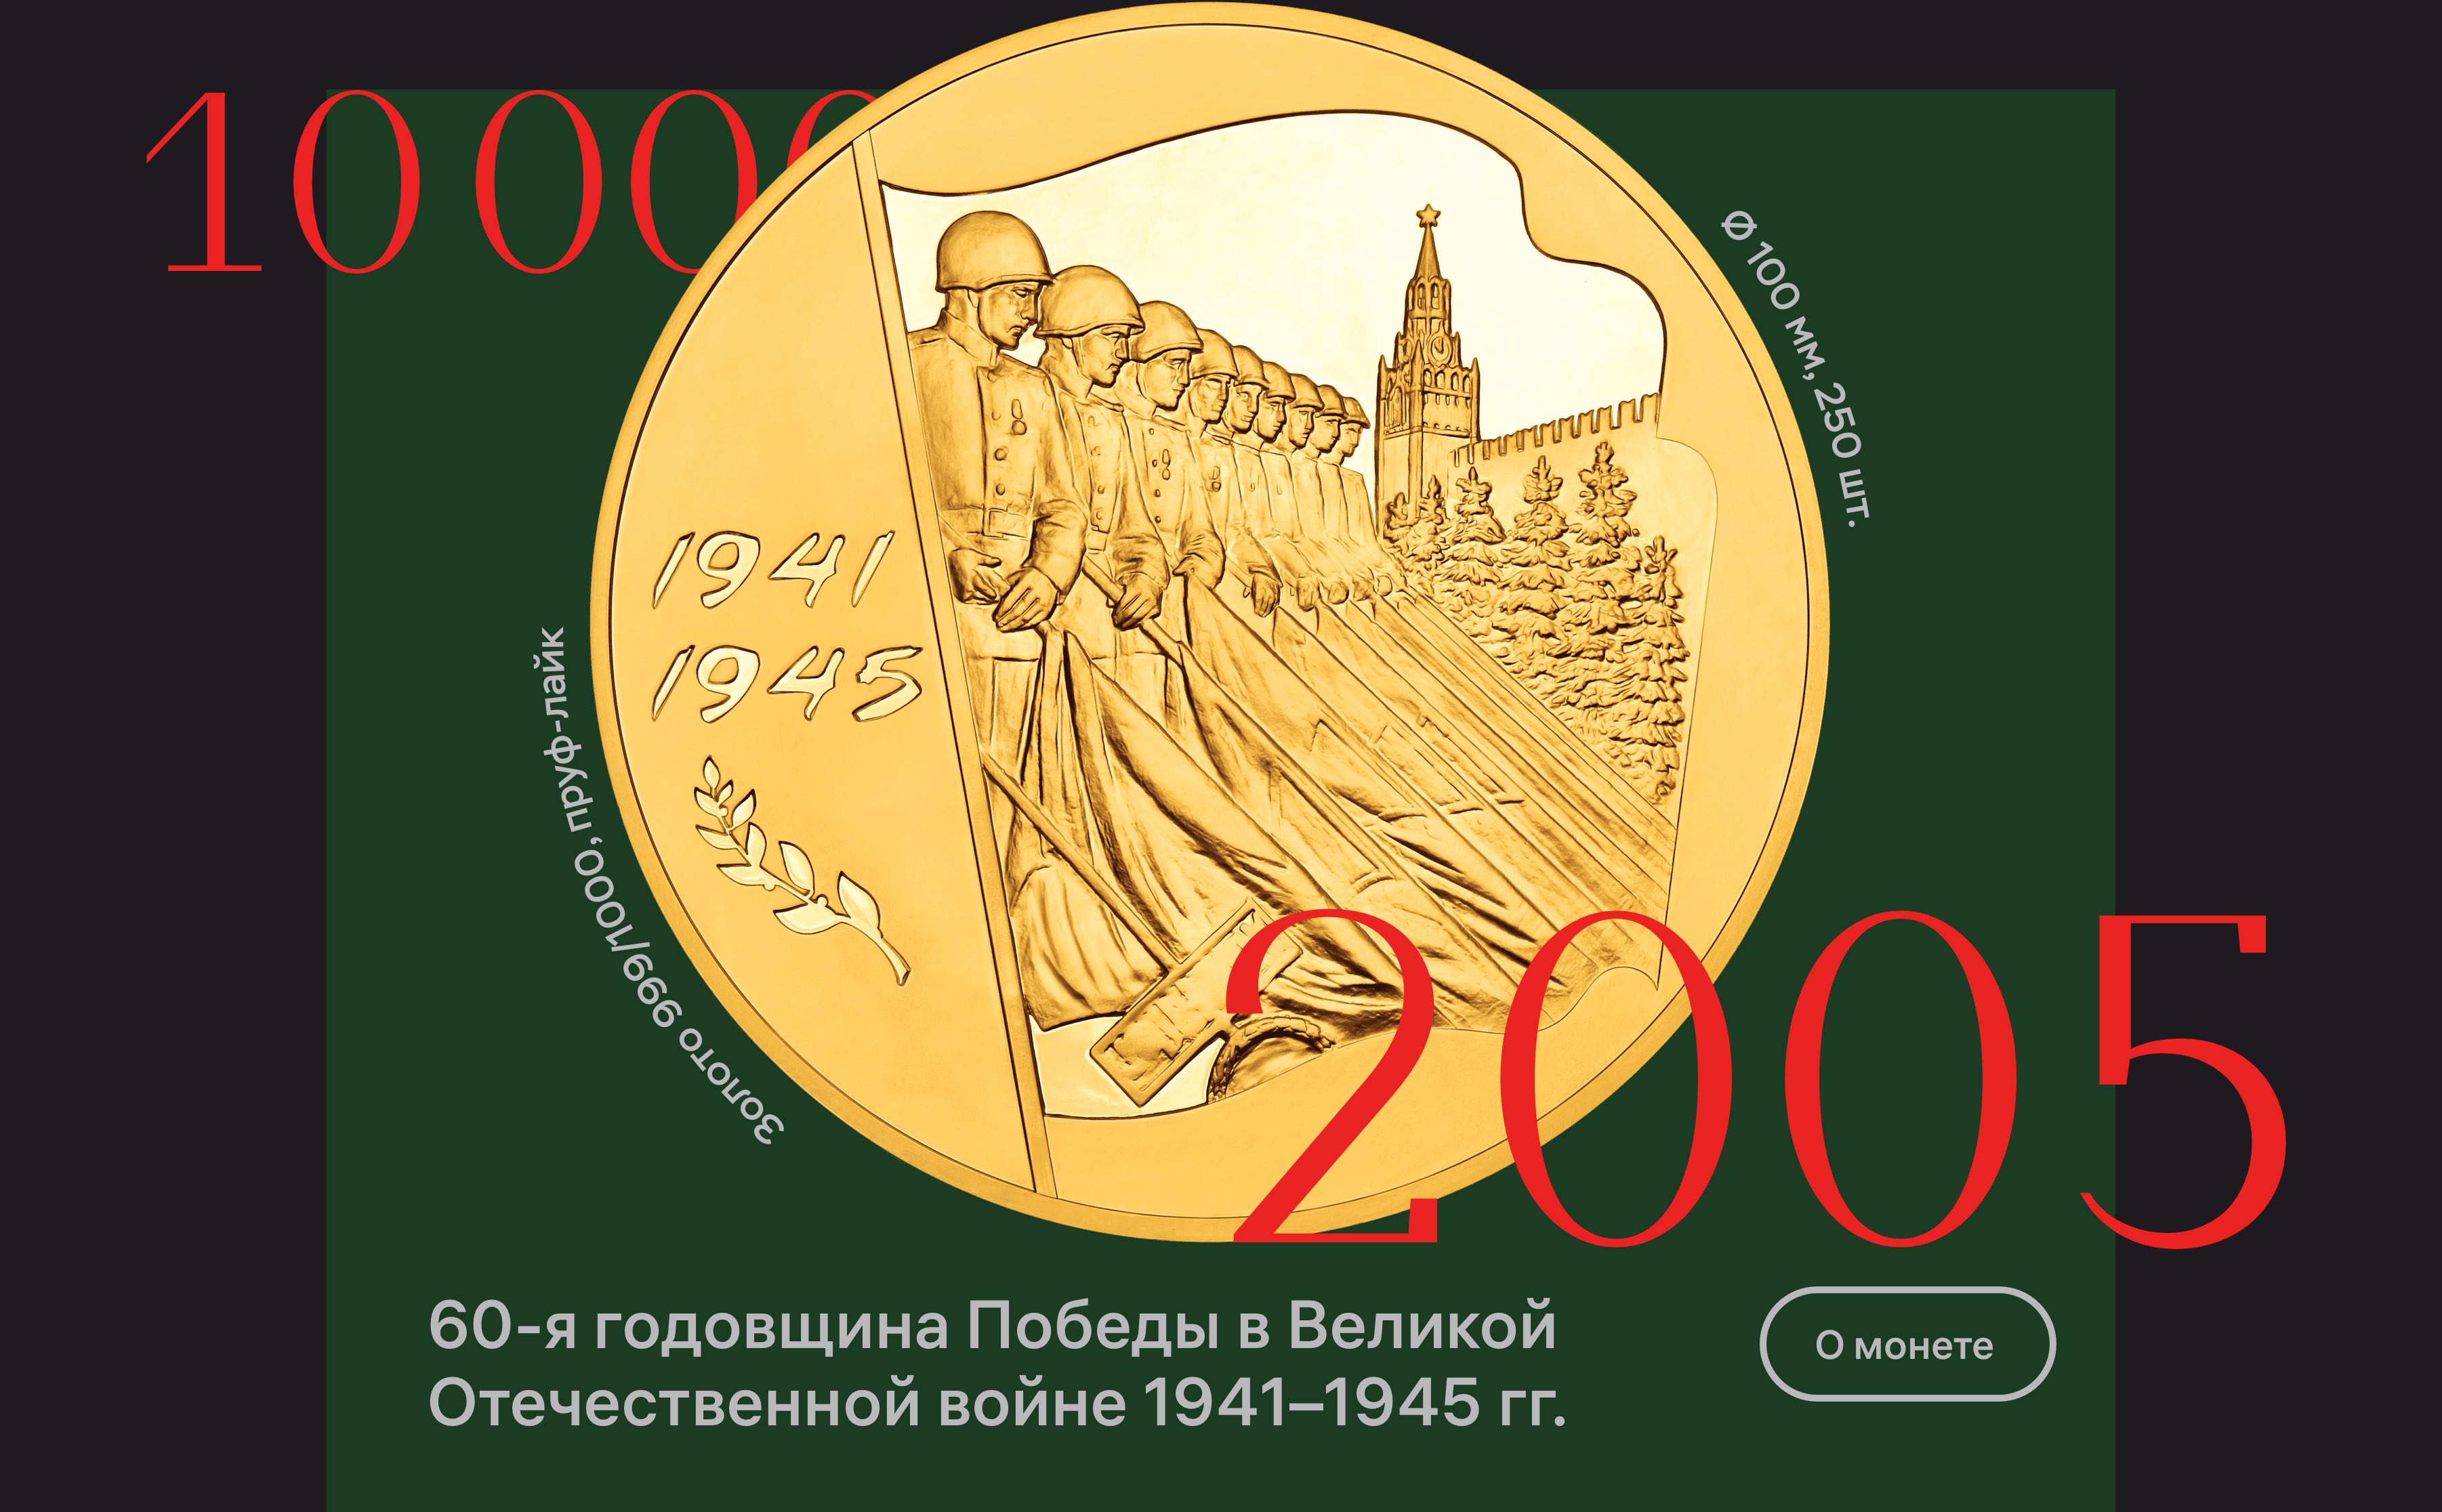 cbr coins 2005